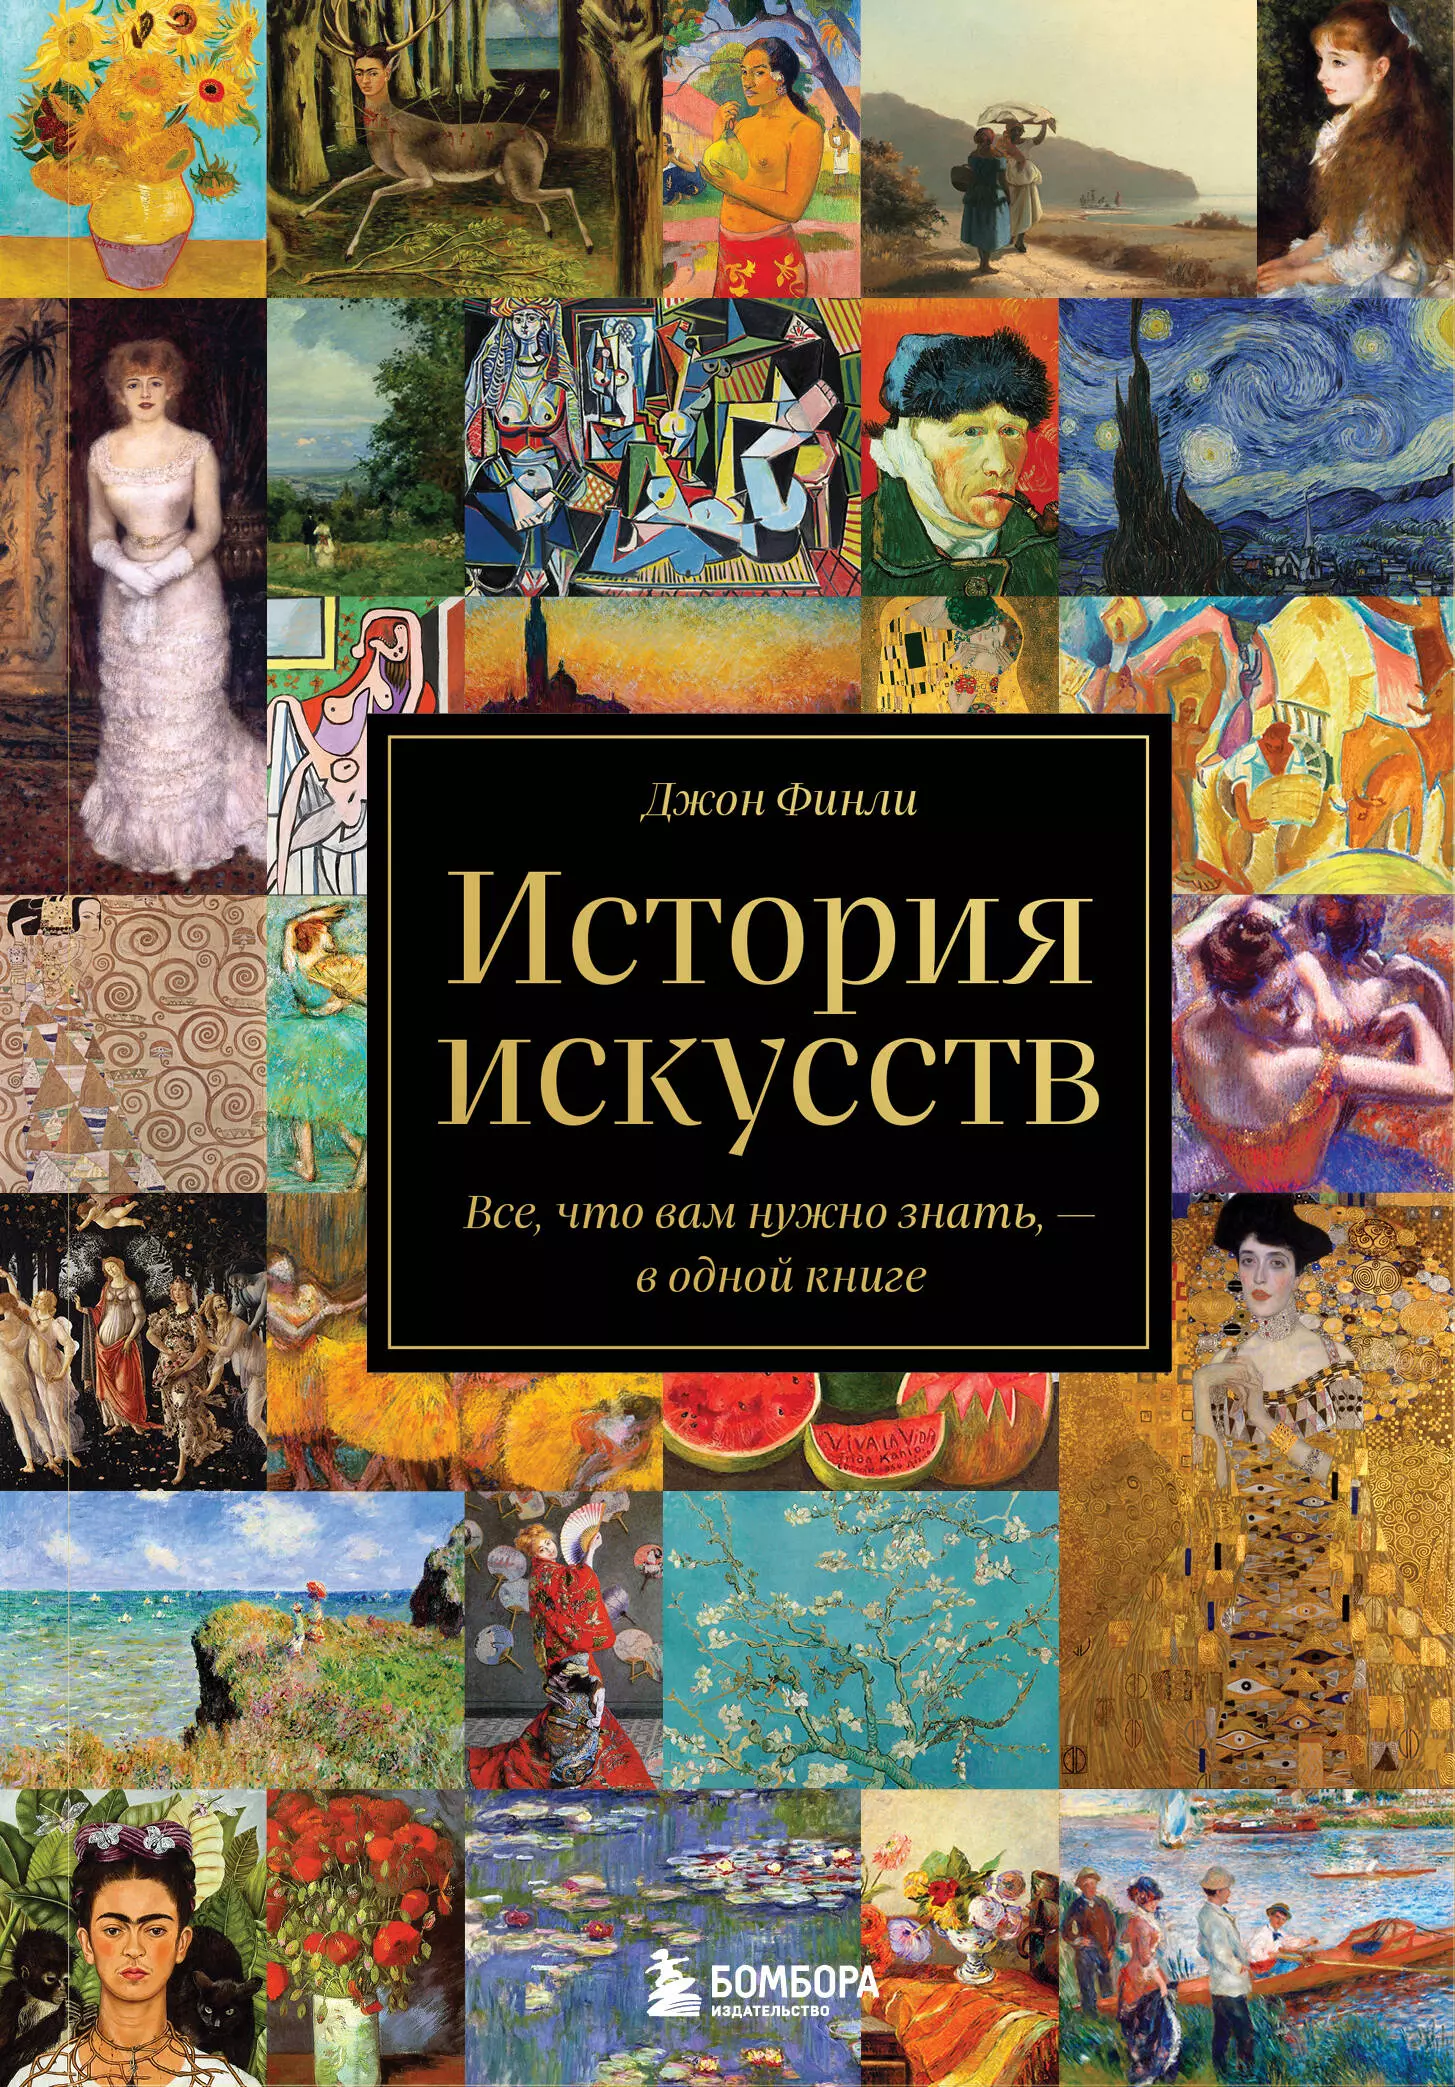 амелина русский язык все что вам нужно знать для егэ История искусств. Все, что вам нужно знать, - в одной книге